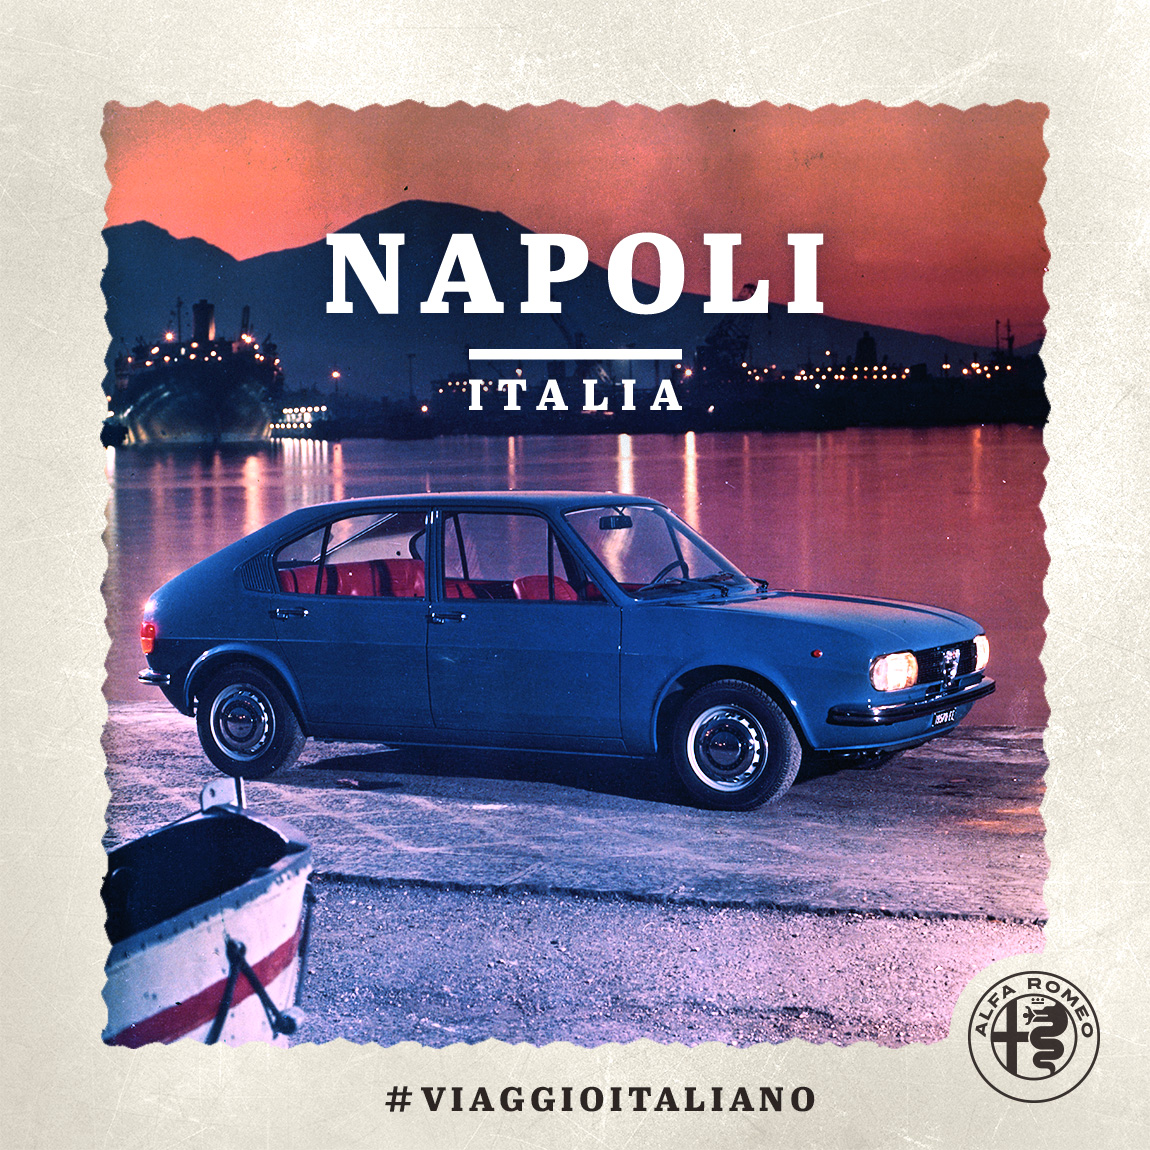 Immagine di un'auto Alfa Romeo a Napoli